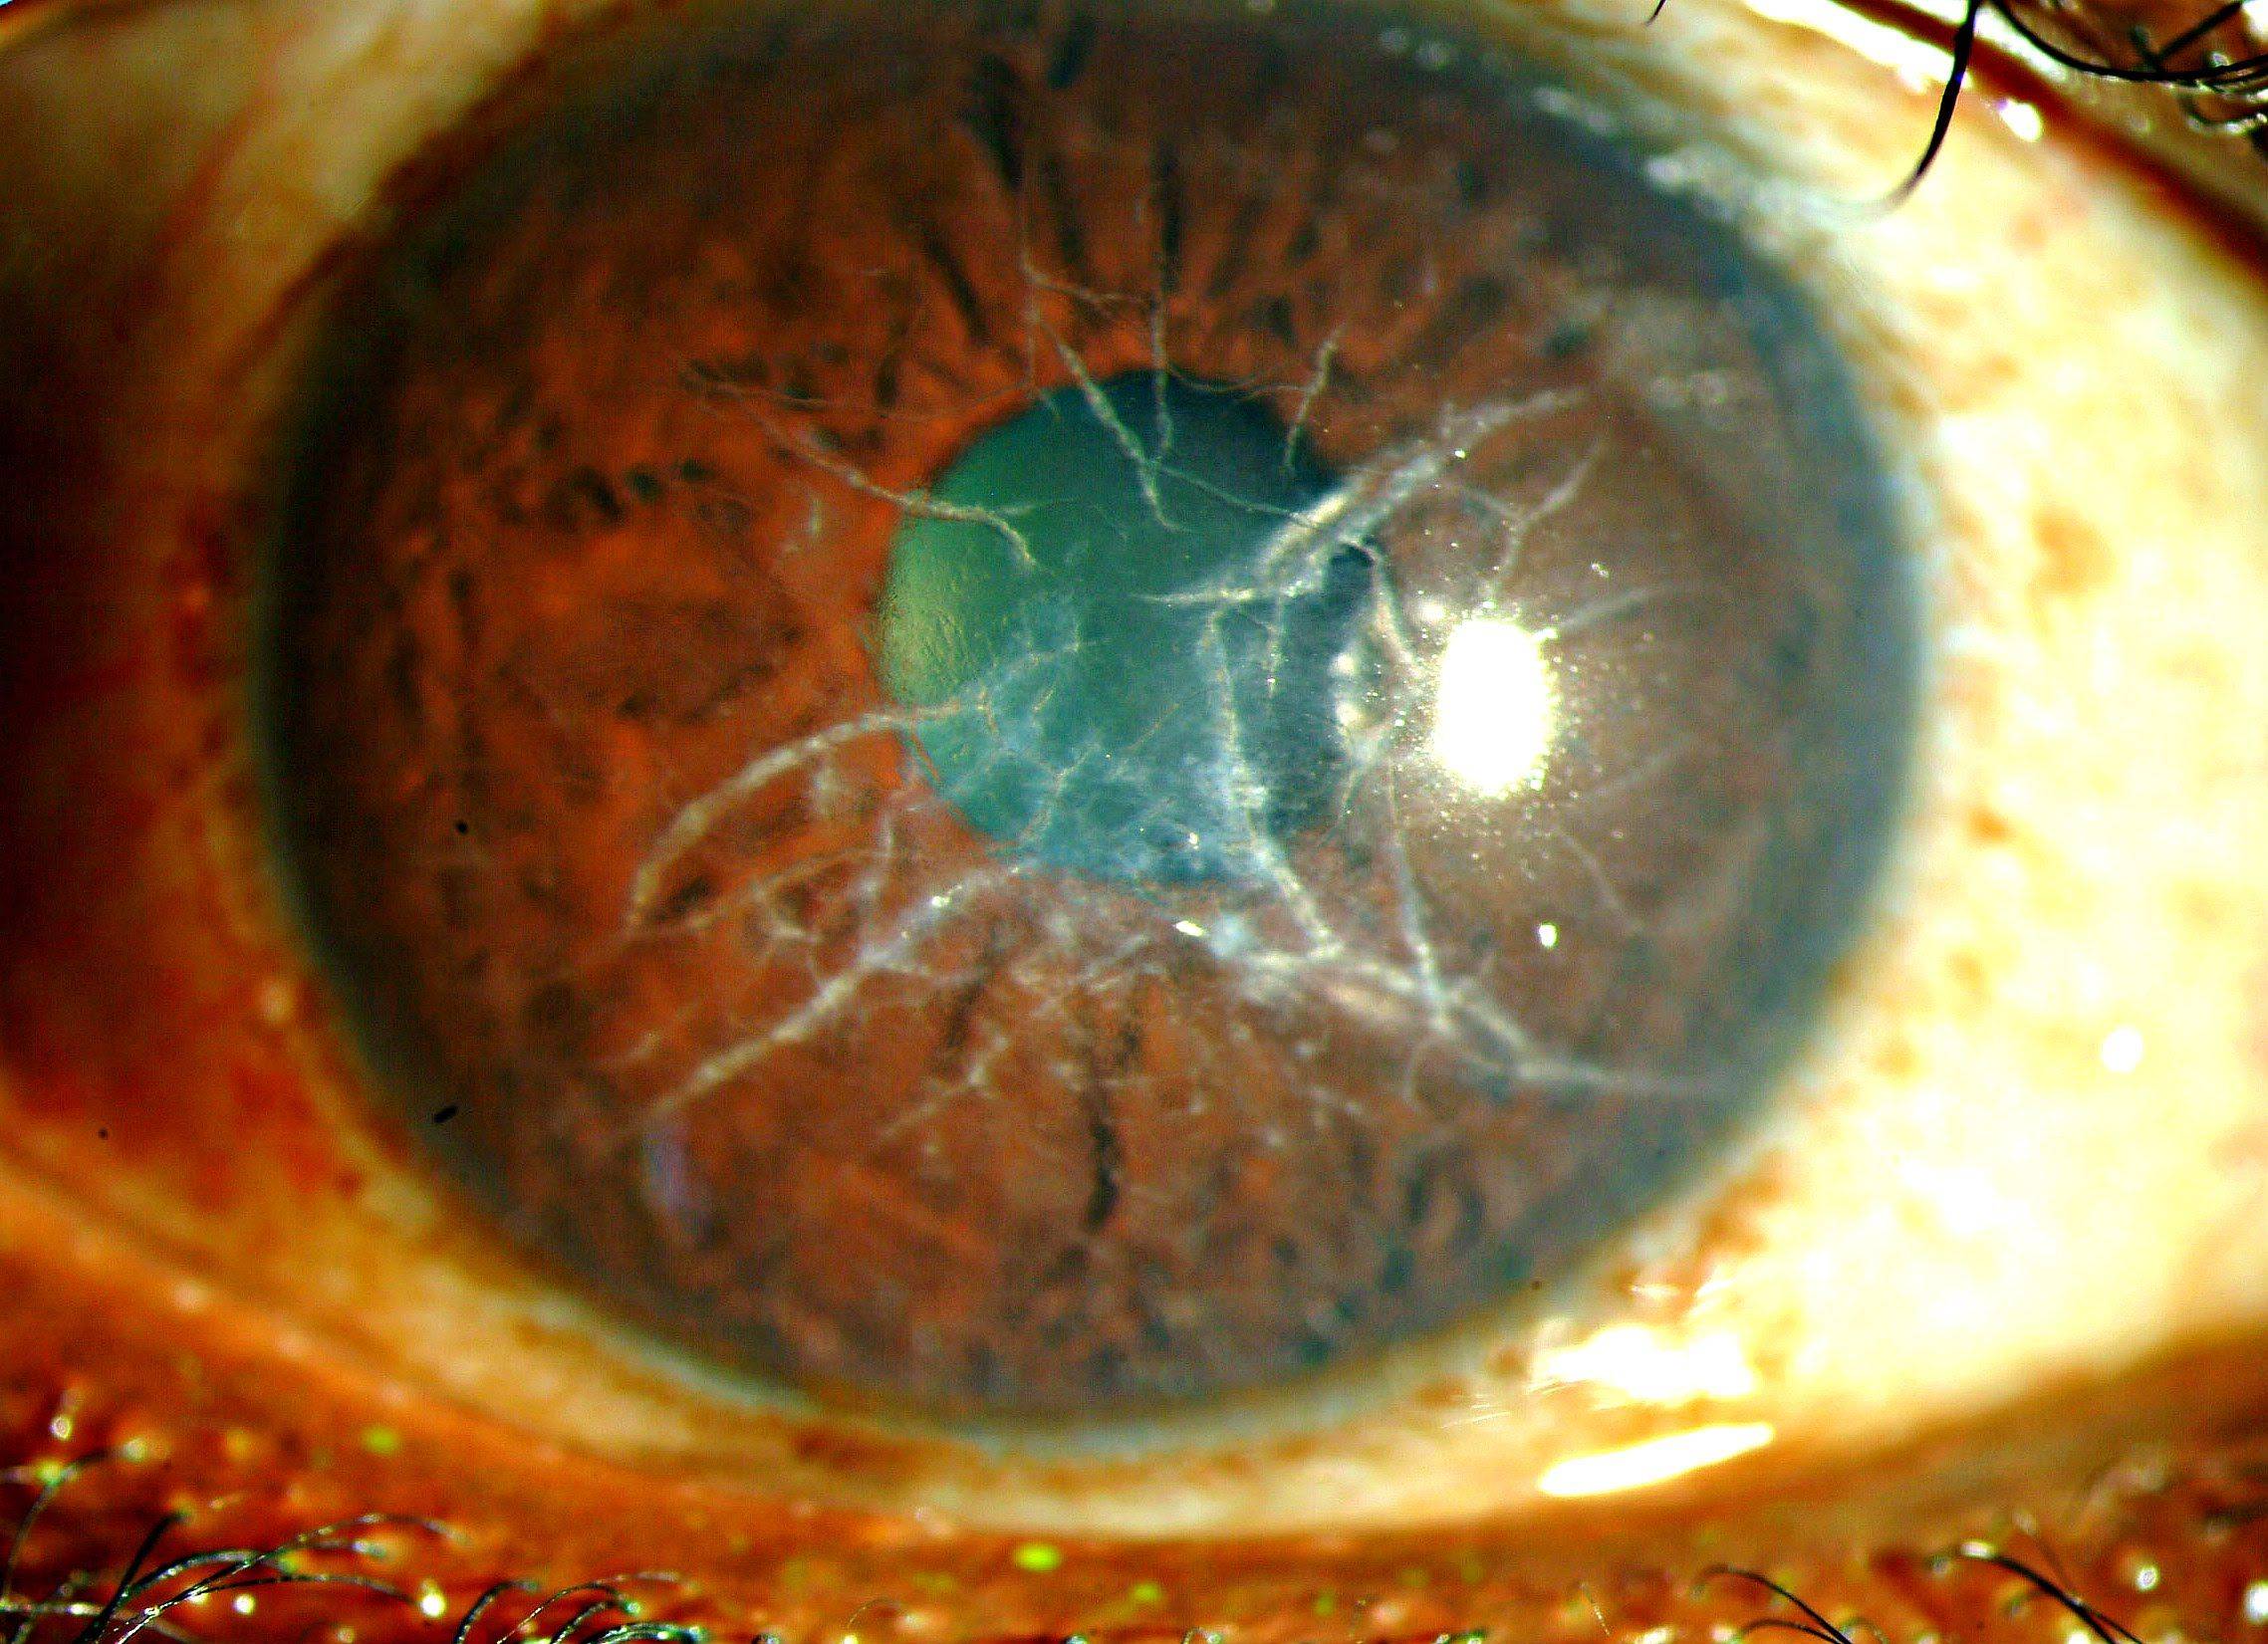 Дистрофия роговицы глаза - лечебные линзы при дистрофии роговицы, капли и народные средства | медицинский портал spacehealth